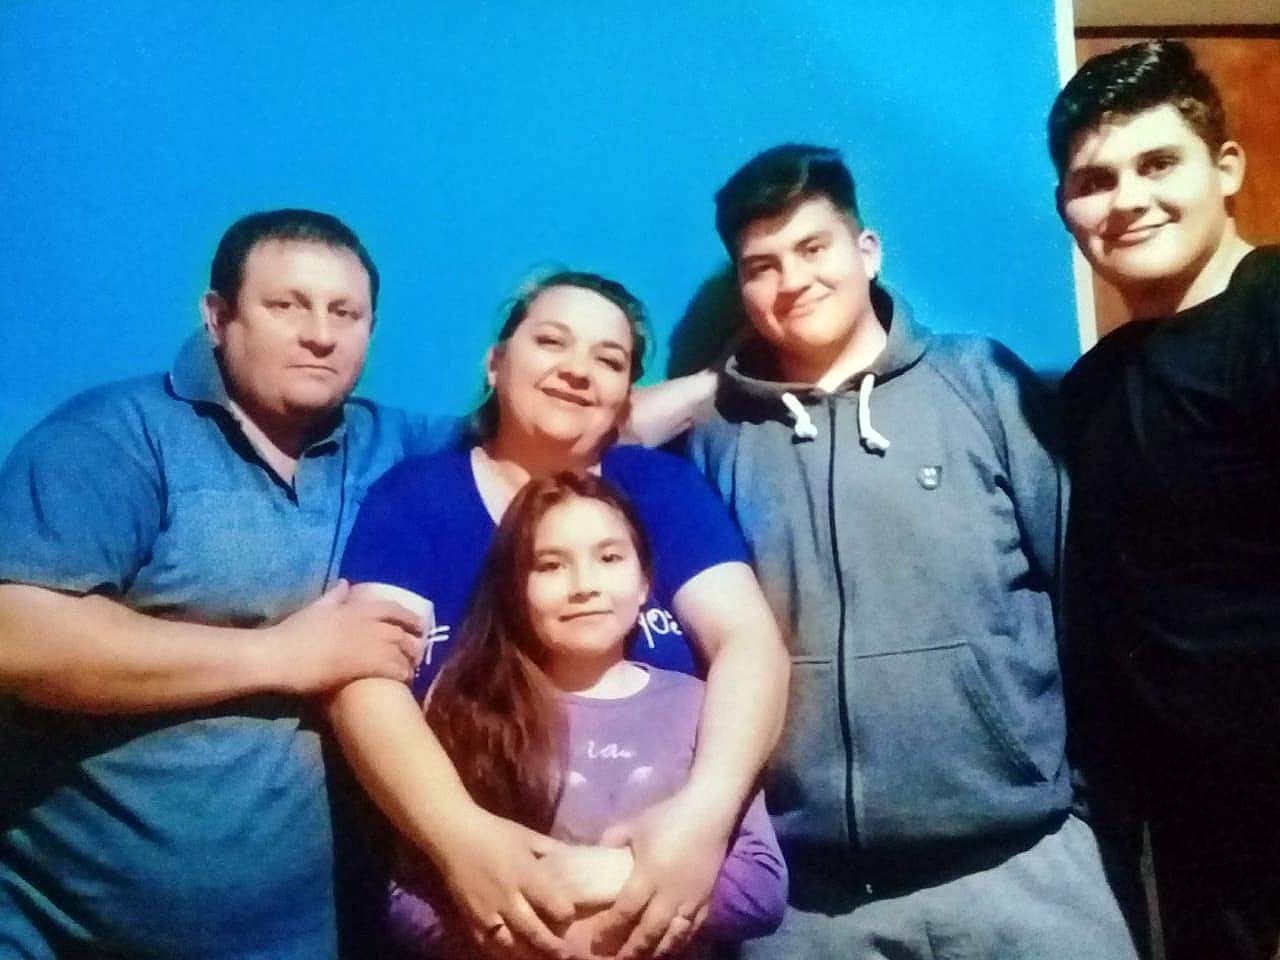 Roberto, Alejandra y los tres hijos del matrimonio. Él era chofer de ambulancia en Río Colorado y falleció tras contagiarse de Covid el 10 de septiembre del 2020. Su familia fue escrachada e insultada en Río Colorado "por traer el virus".